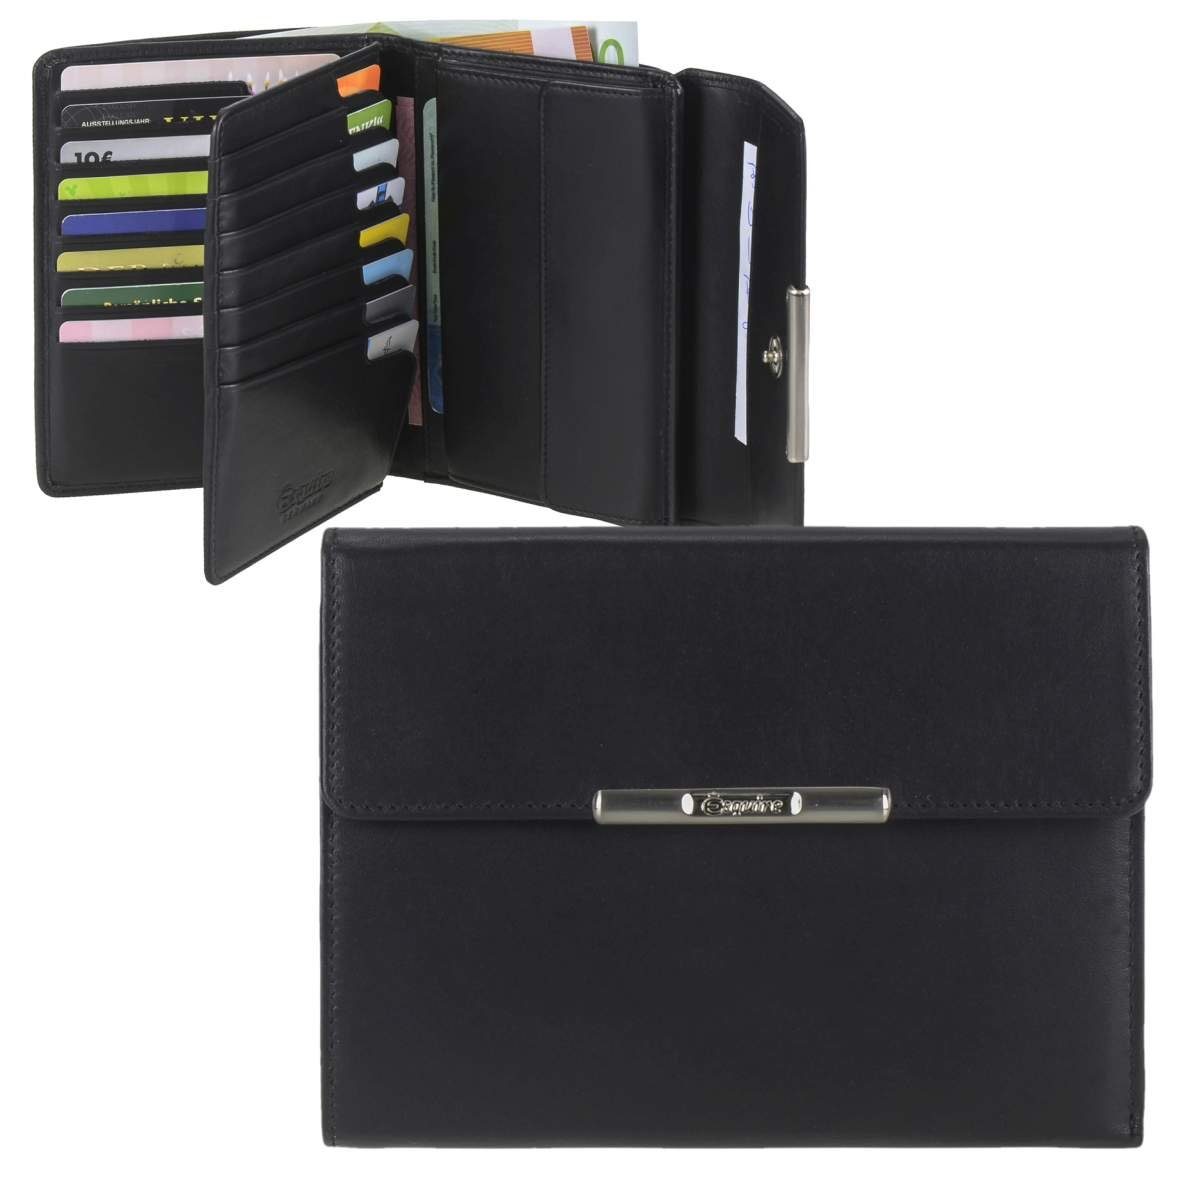 Esquire Geldbörse Helena, Portemonnaie, RFID Schutz gegen Datendiebstahl, groß, 20 Kartenfächer schwarz